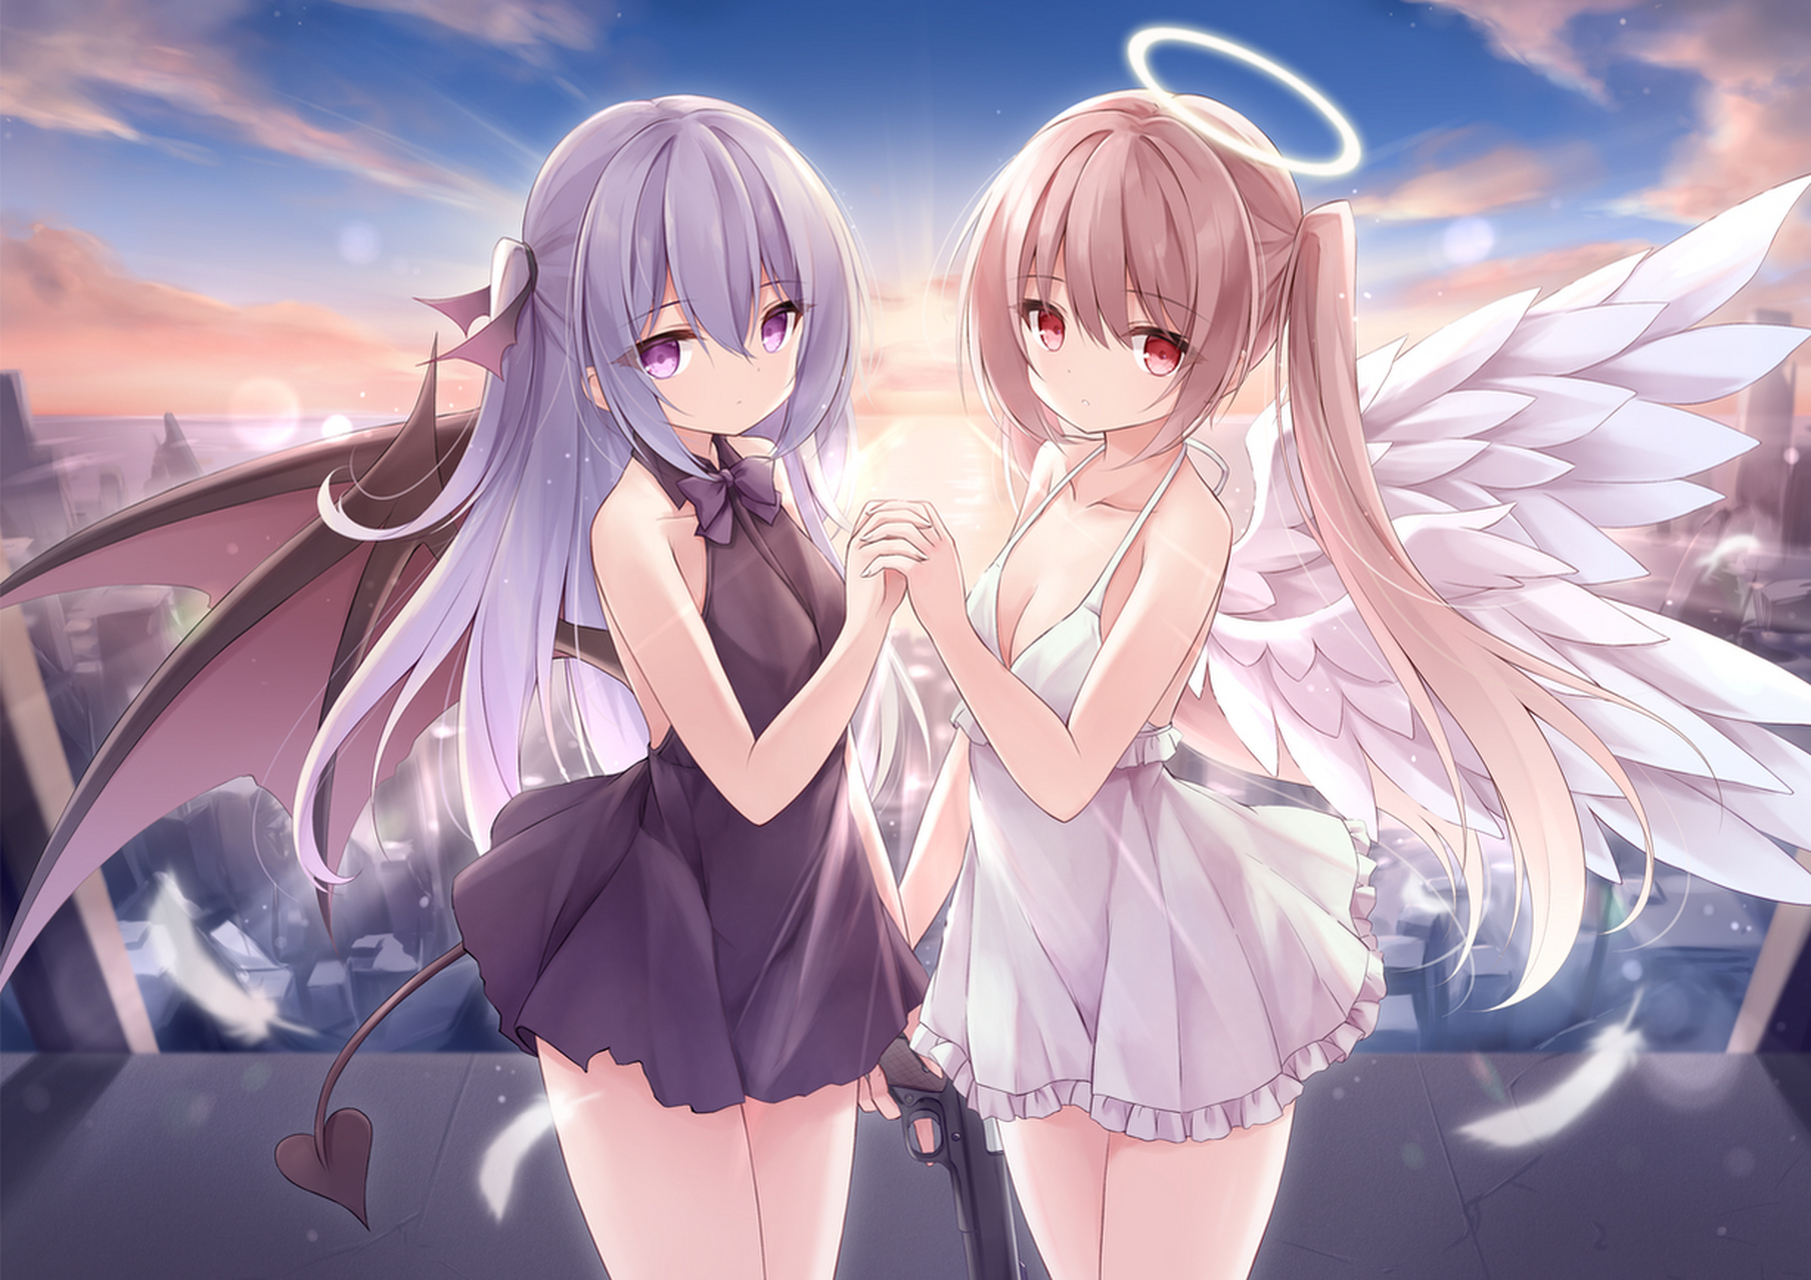 小天使与小恶魔,你更喜欢谁?[三哈]